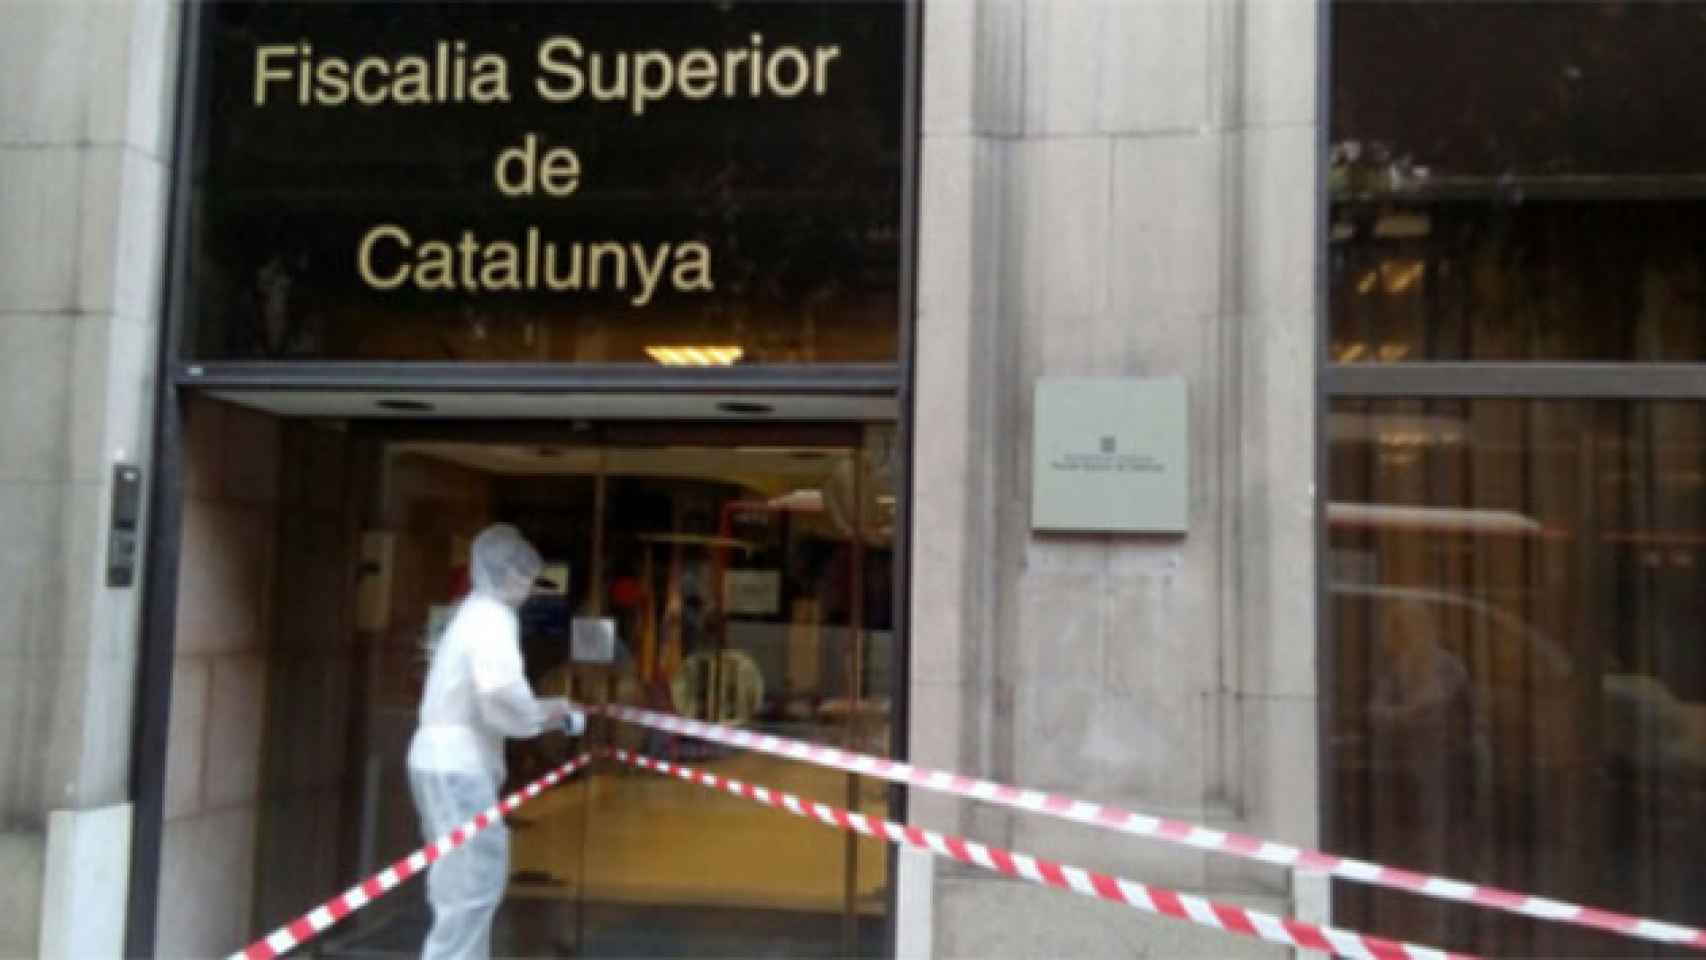 Arran 'precinta' la Fiscalía Superior de Cataluña por una plaga de fascismo